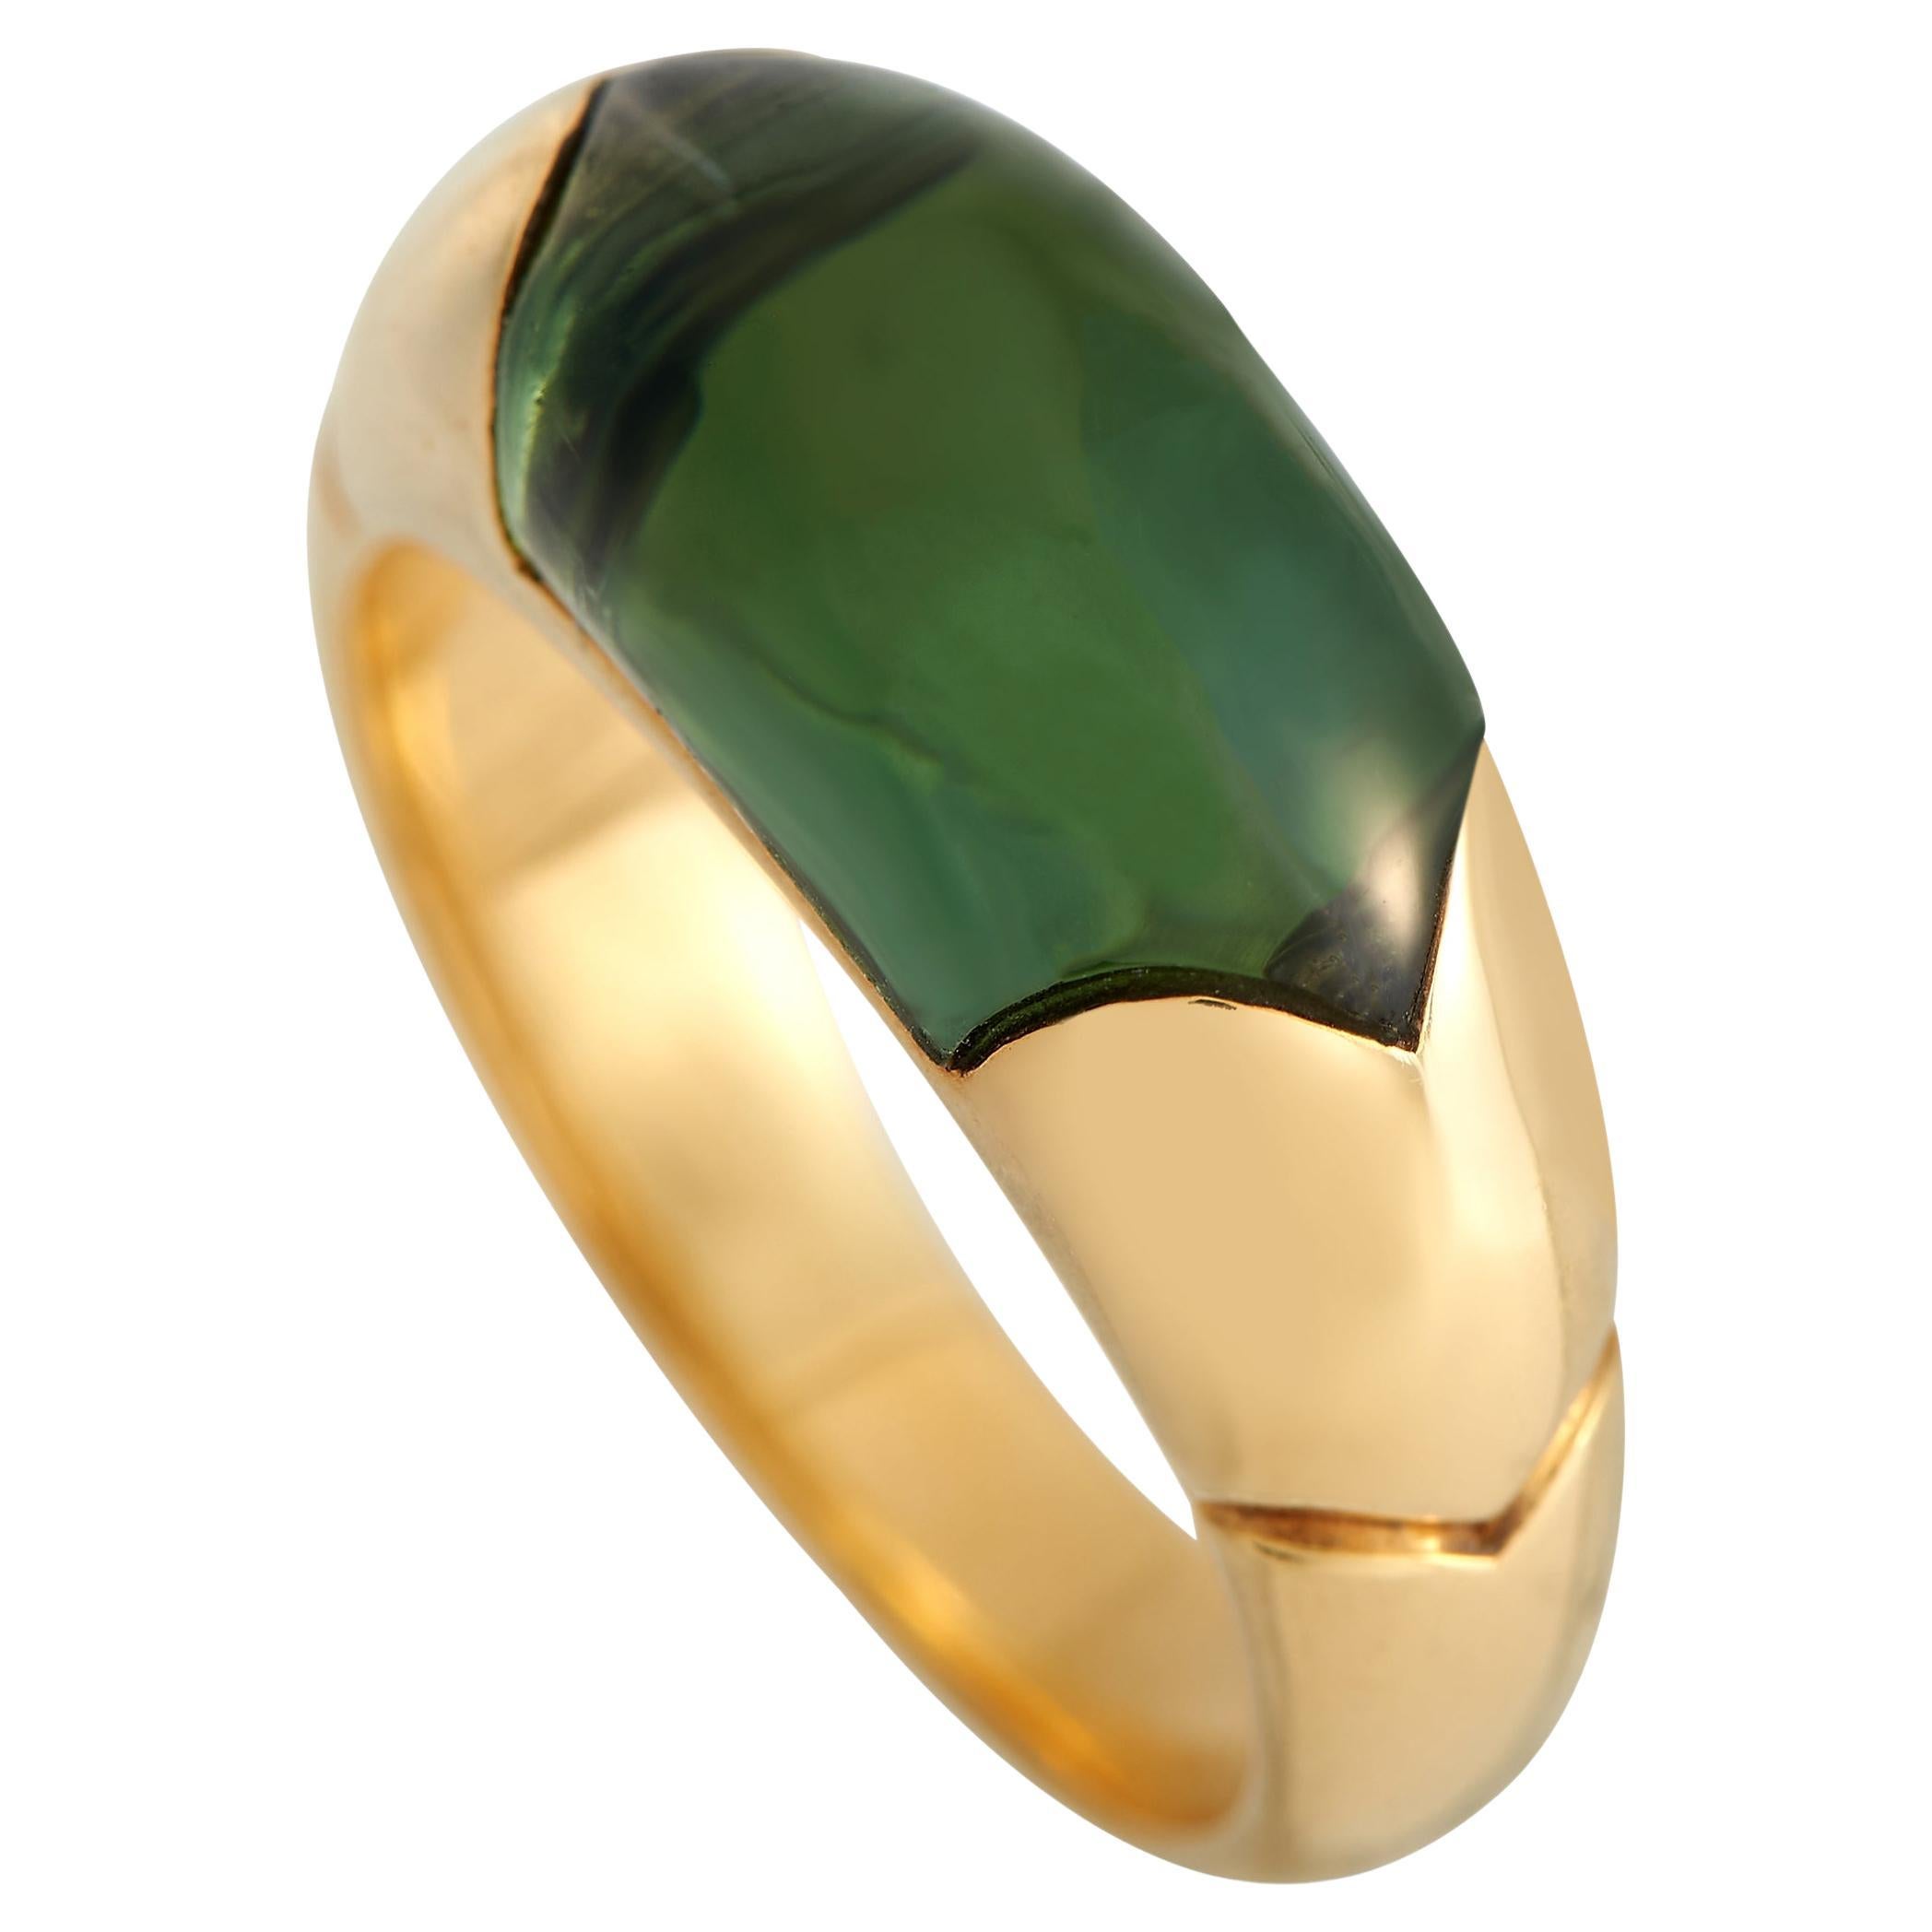 Bvlgari Tronchetto 18K Yellow Gold Green Tourmaline Ring